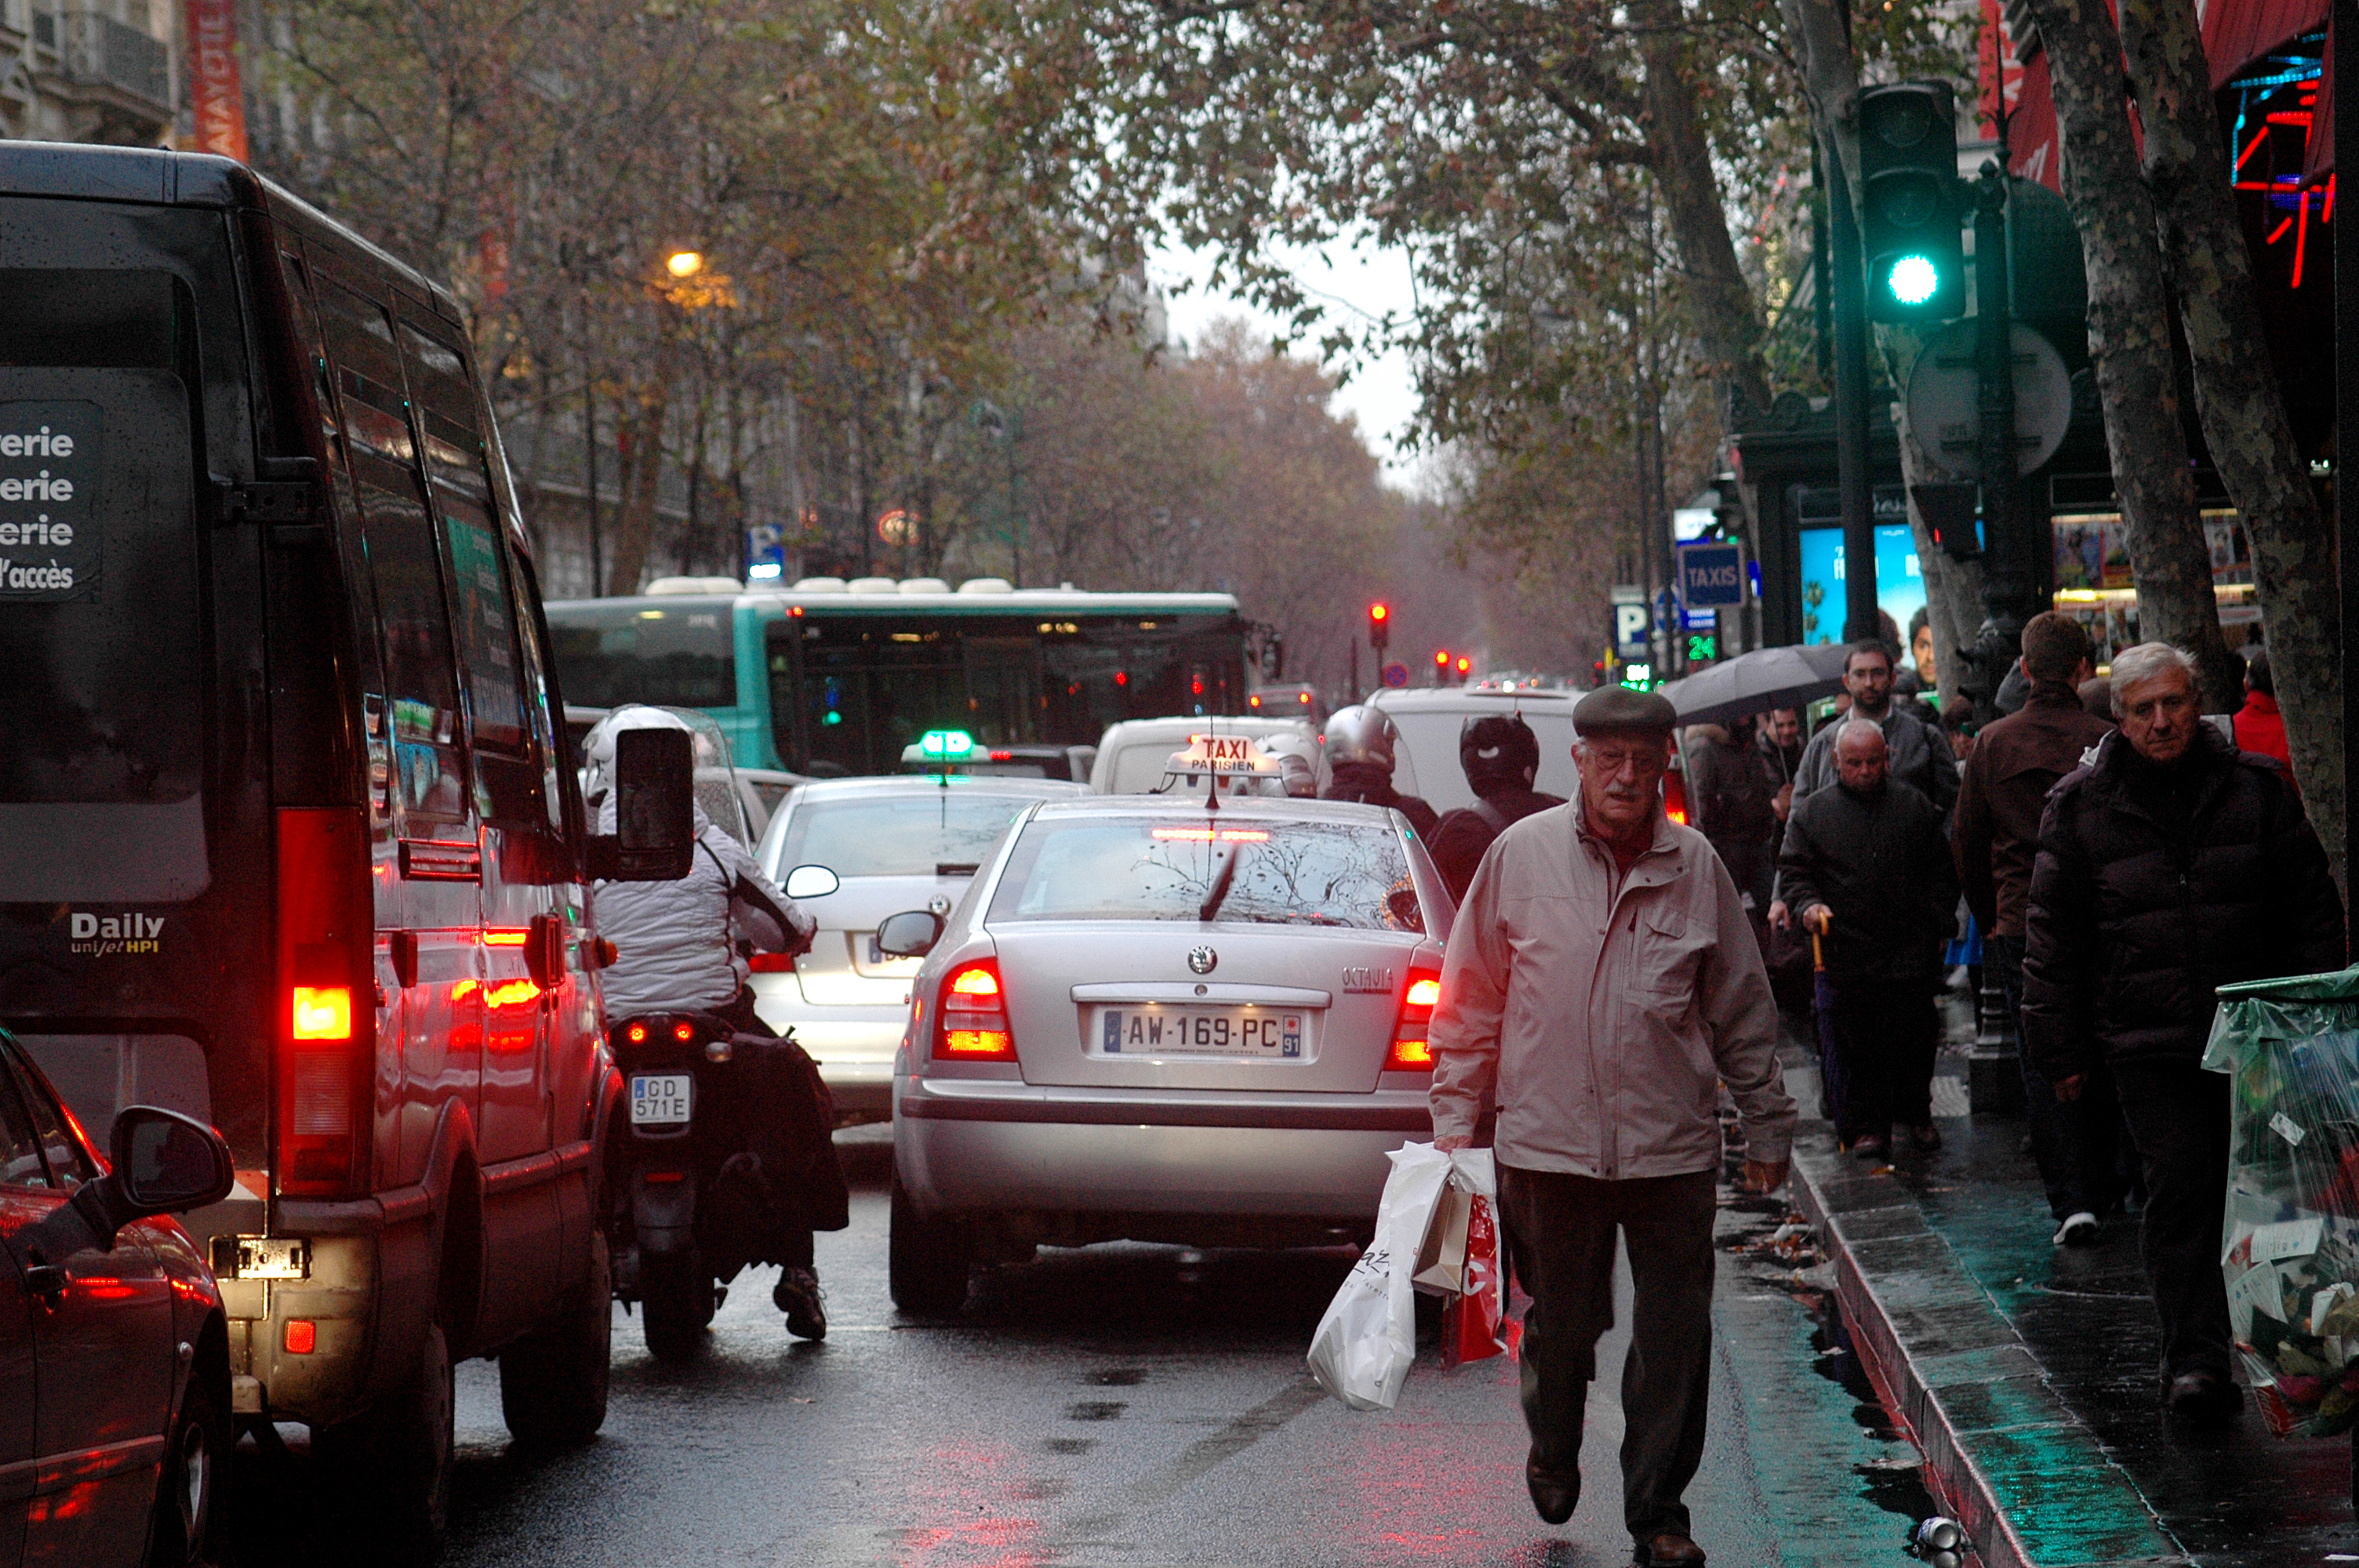 Hidalgo veut drastiquement réduire la circulation automobile dans le coeur de Paris dès 2022